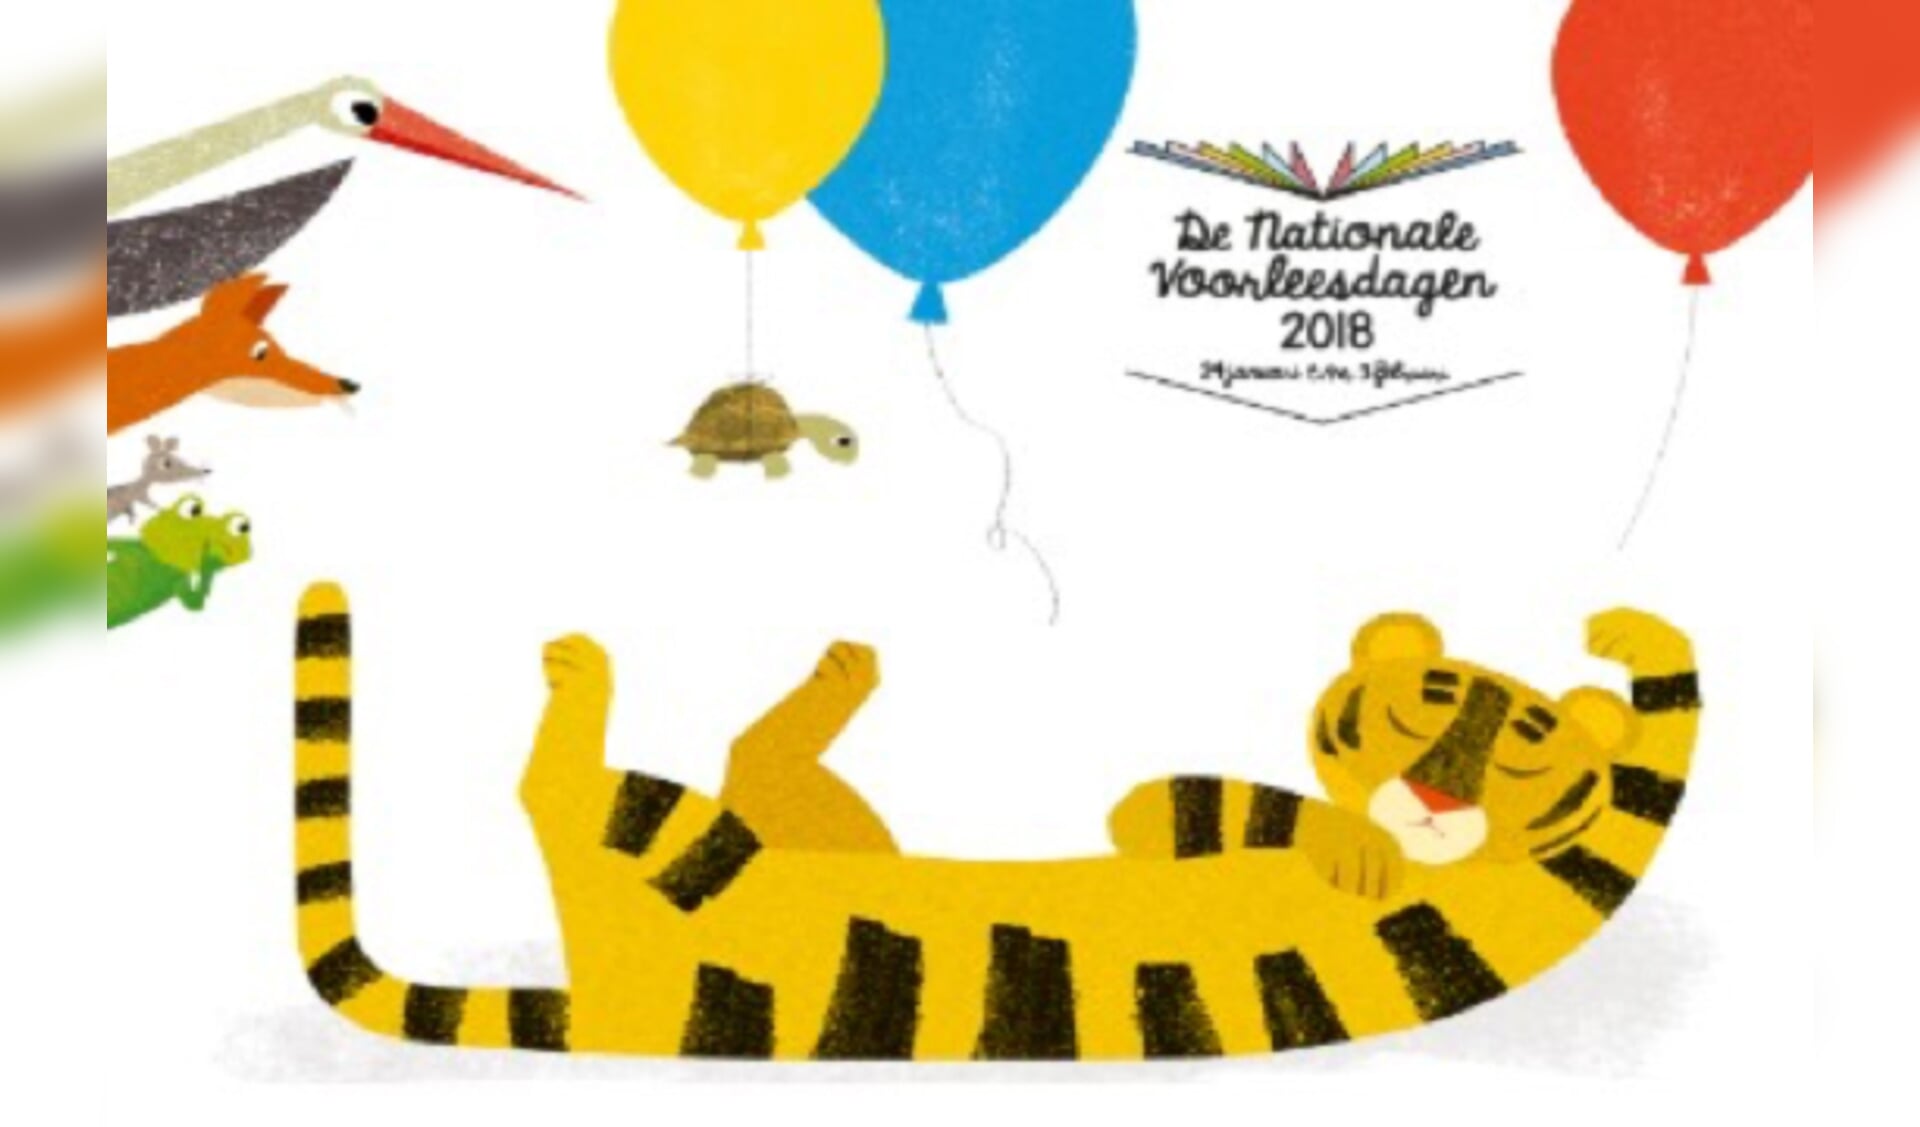 Ssst! De tijger slaapt is verkozen tot beste prentenboek en staat centraal tijdens de Nationale Voorleesdagen.